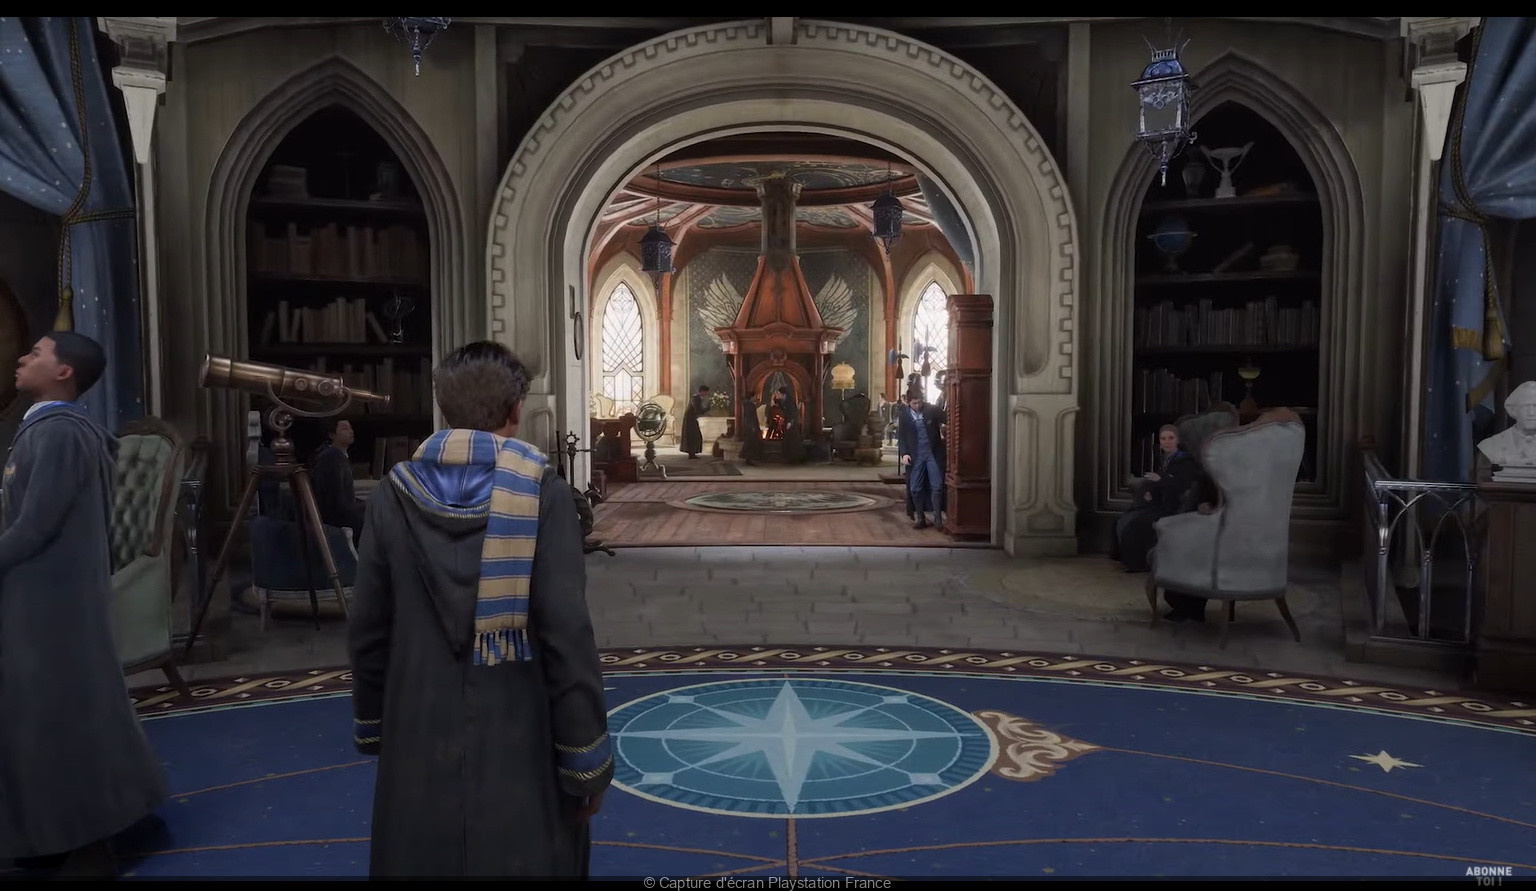 Hogwarts Legacy: o videojogo mais mágico do ano disponível na